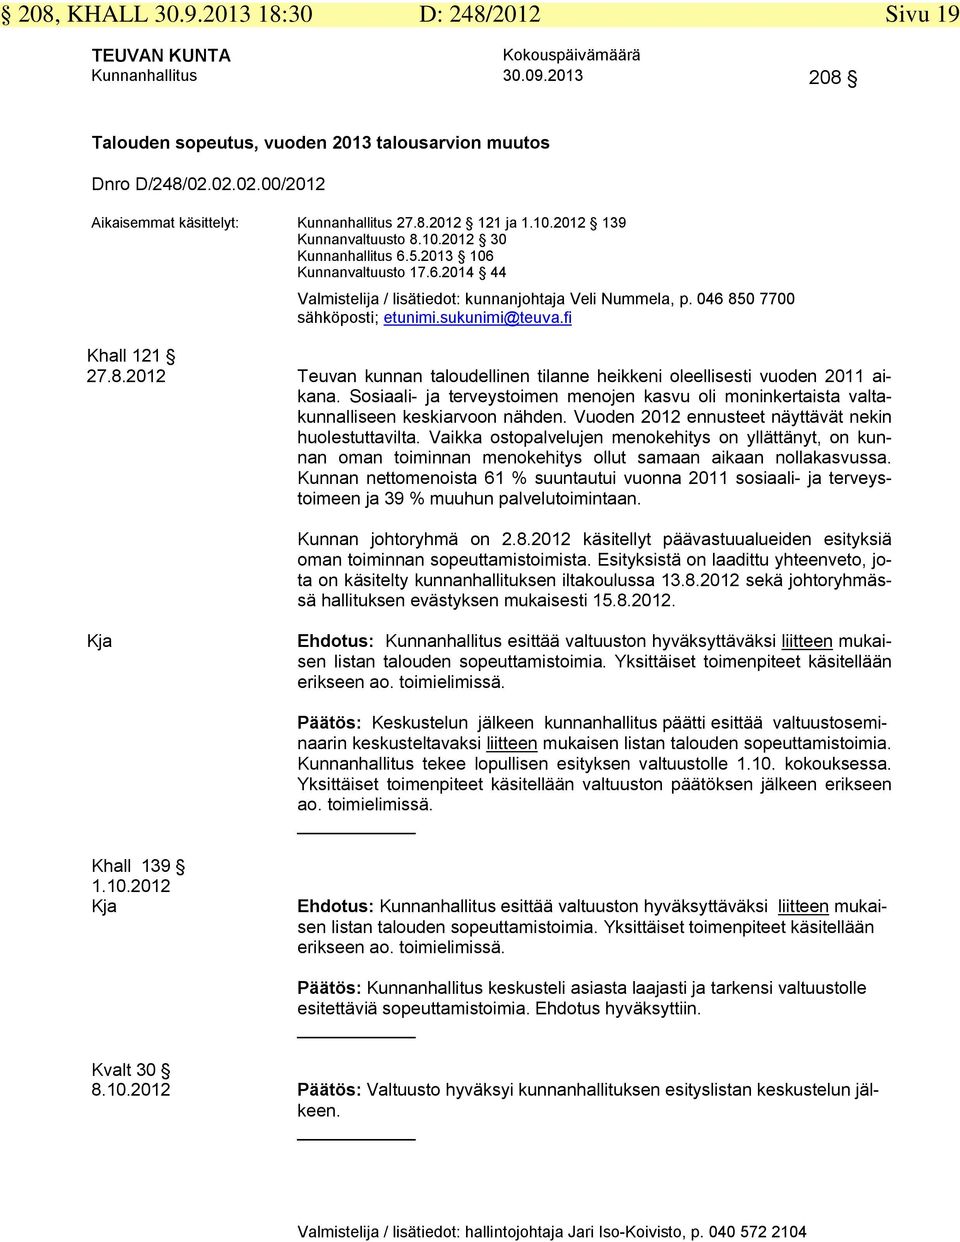 sukunimi@teuva.fi Khall 121 27.8.2012 Teuvan kunnan taloudellinen tilanne heikkeni oleellisesti vuoden 2011 aikana.